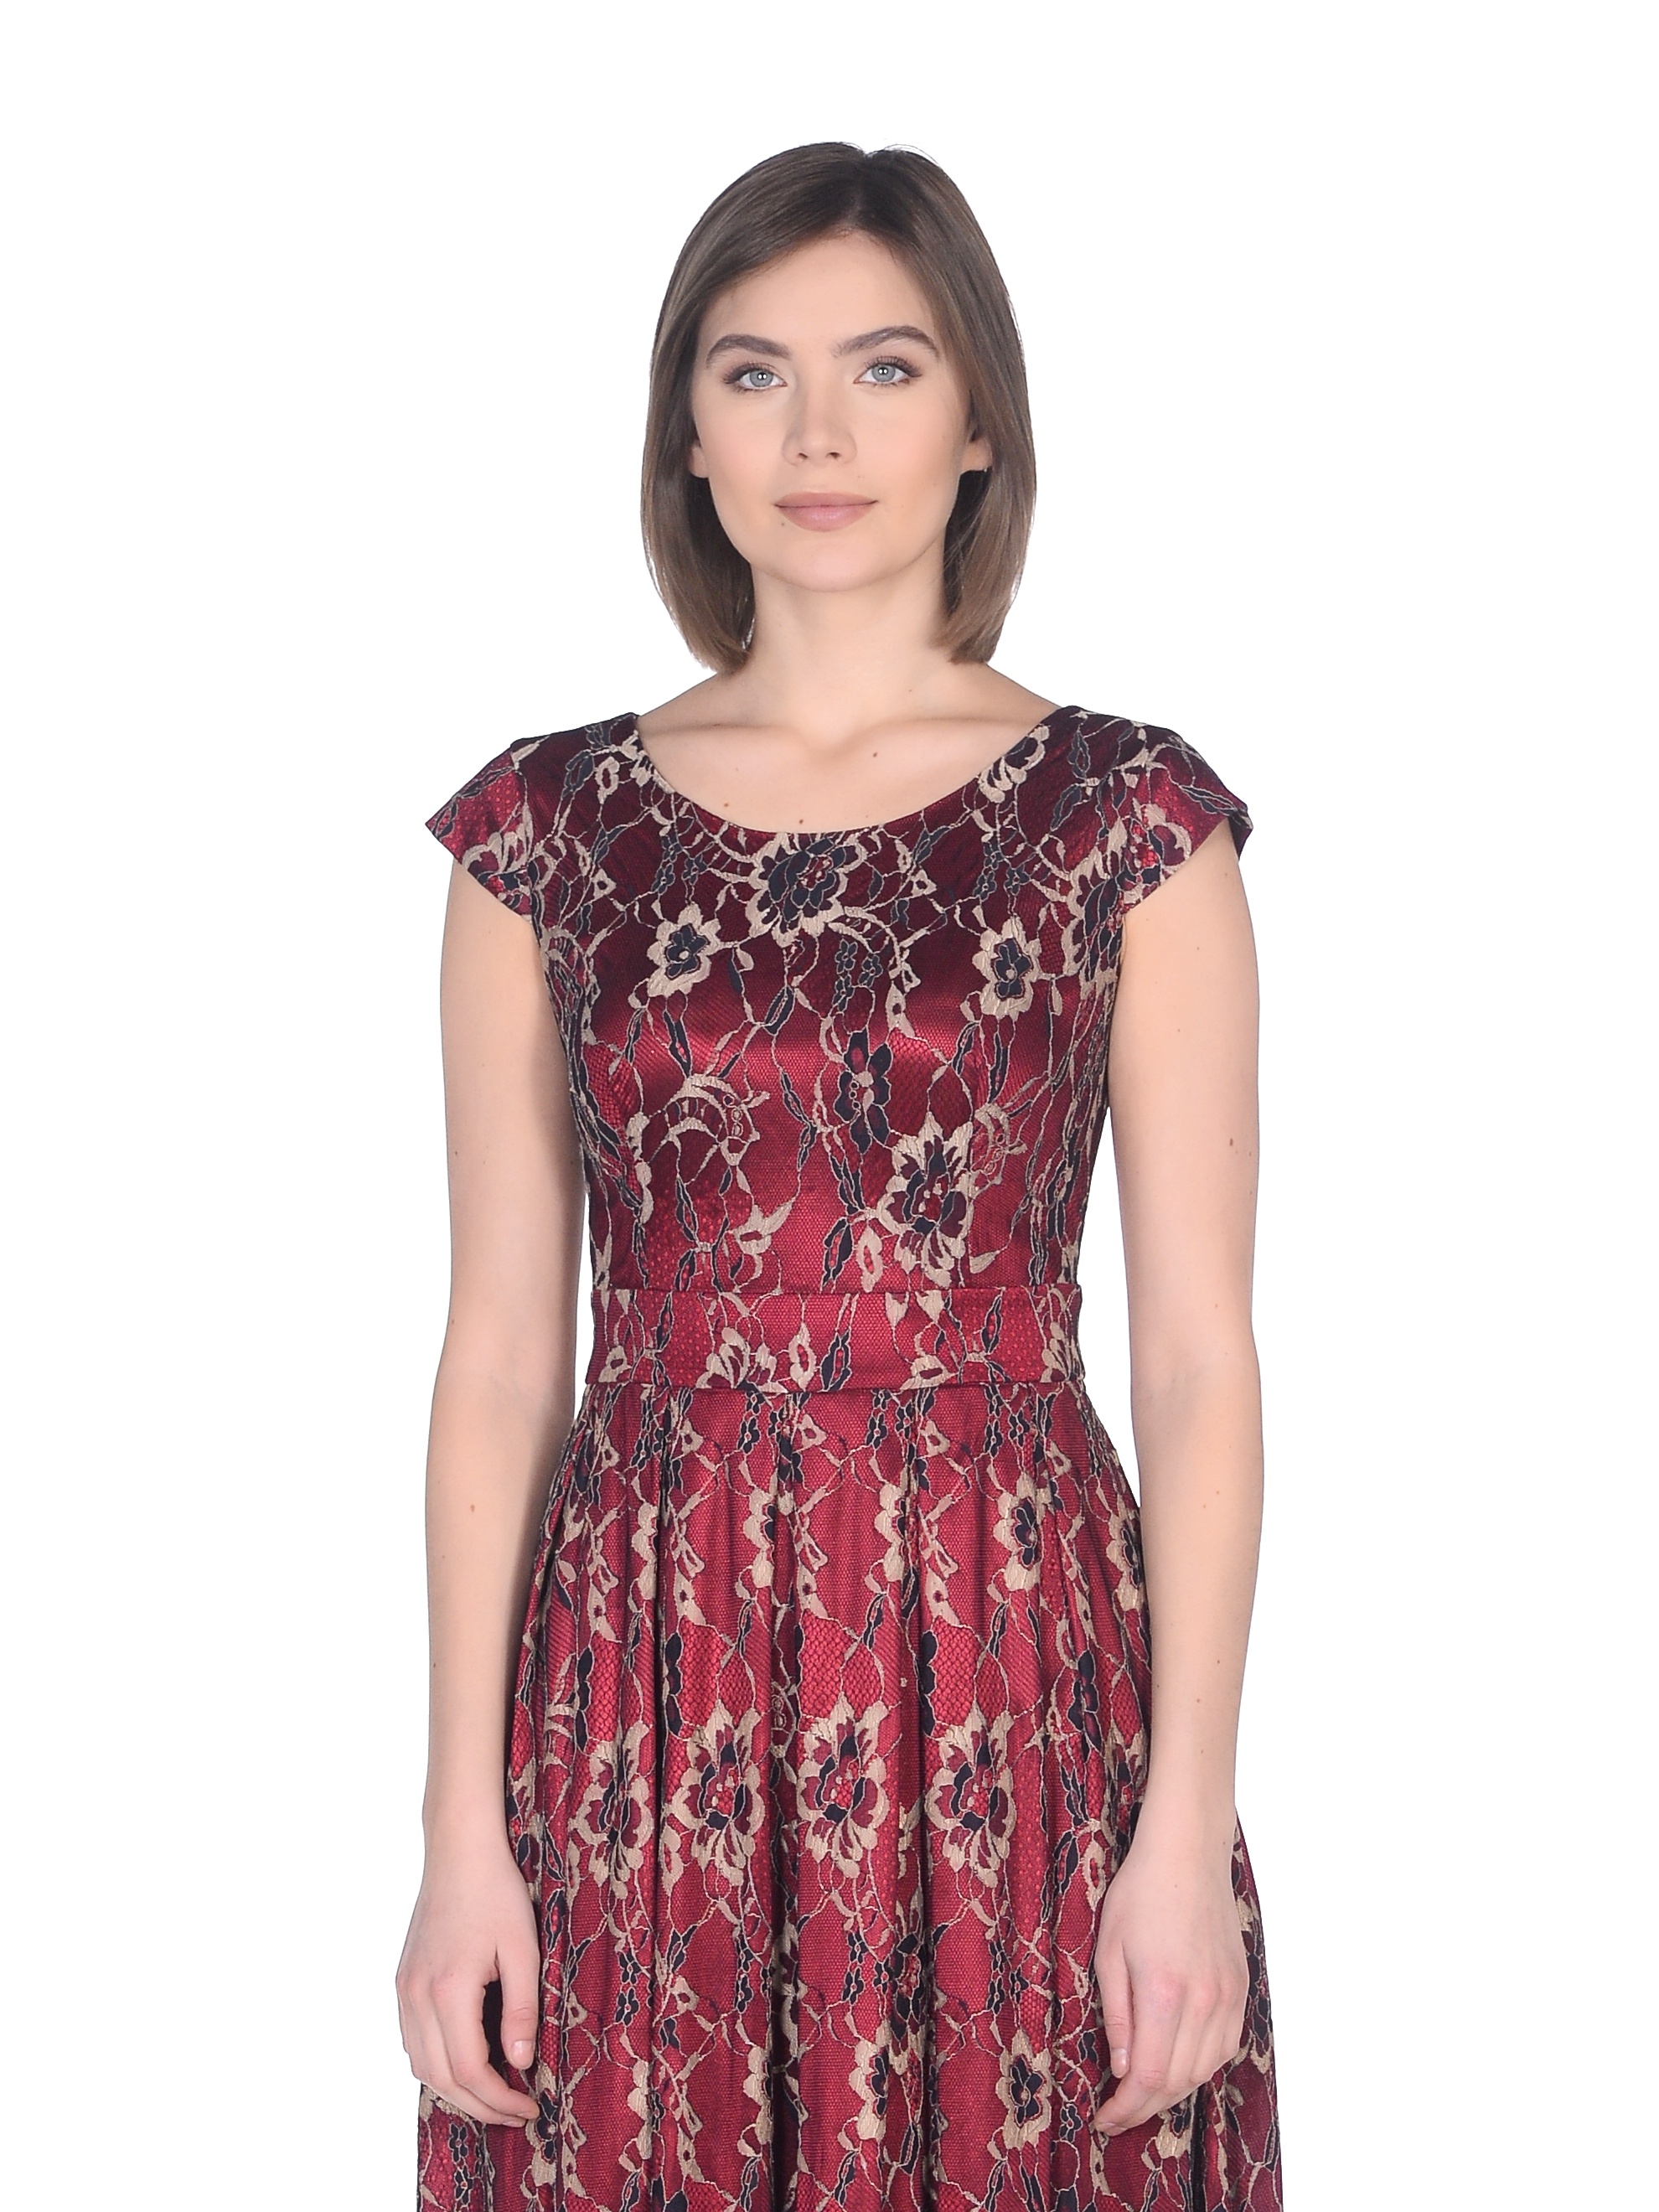 Платье Merlis Купить В Интернет Магазине